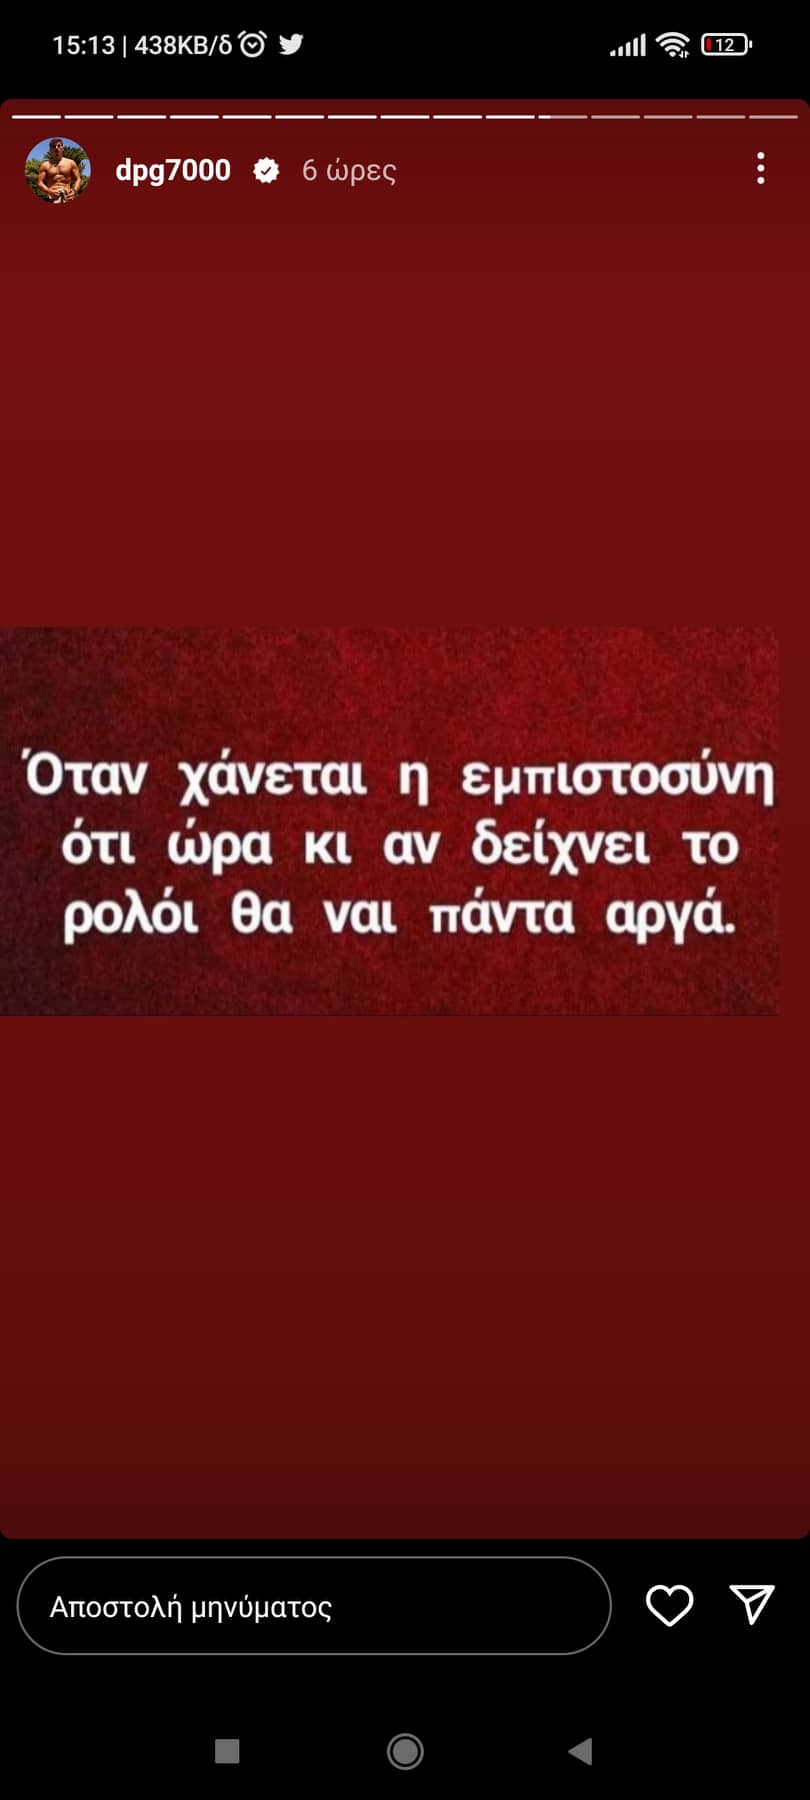 Γιαννακόπουλος: «Όταν χάνεται η εμπιστοσύνη... θα ναι πάντα αργά!» (pic)